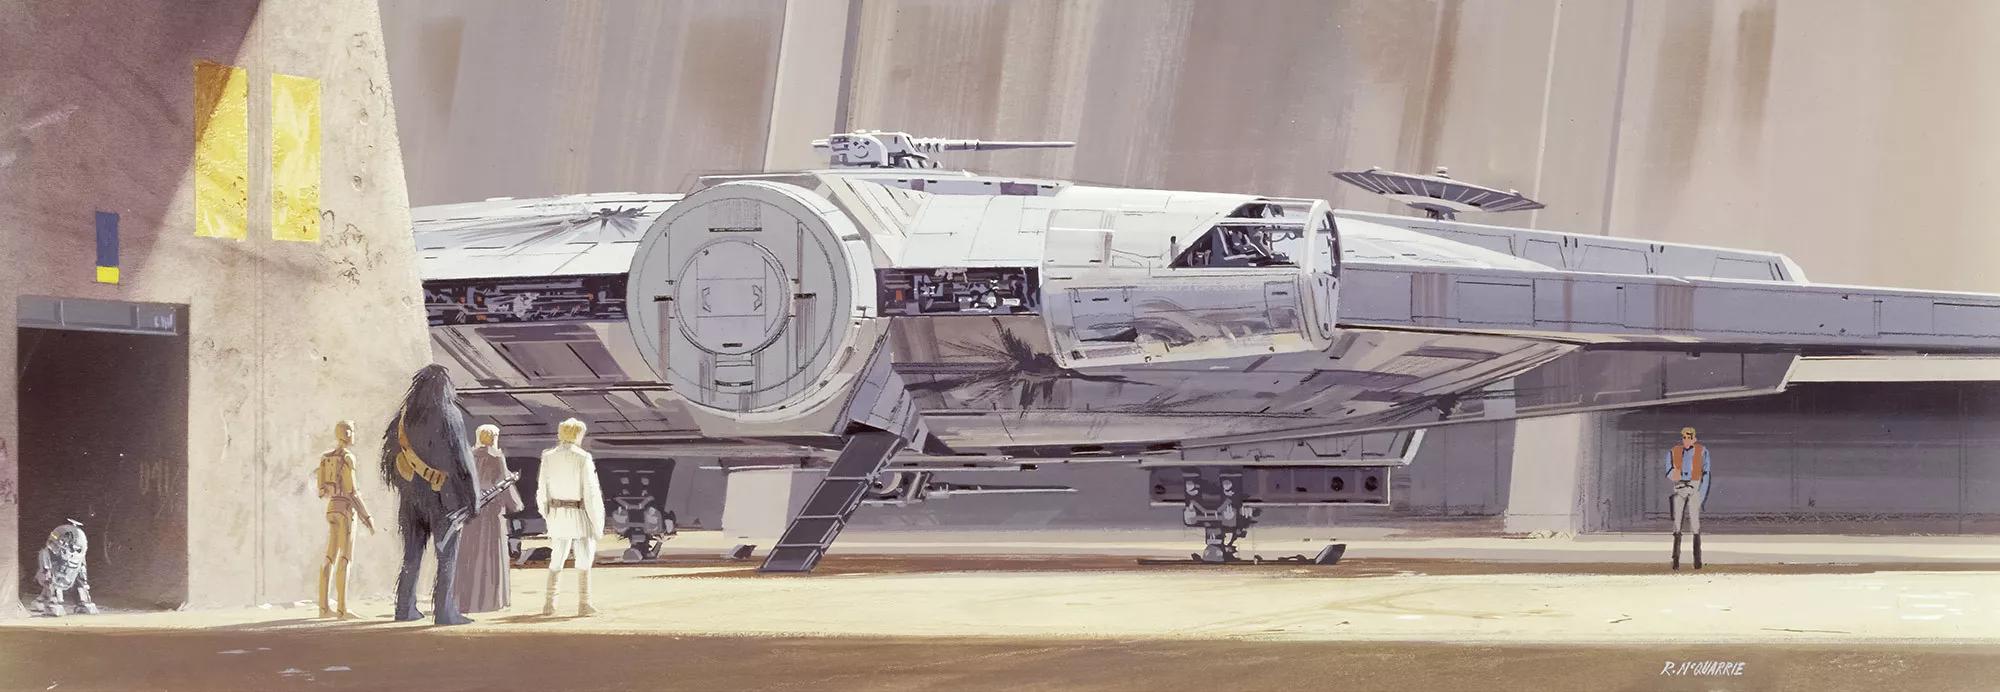 Star Wars Millenium Falcon fali poszter